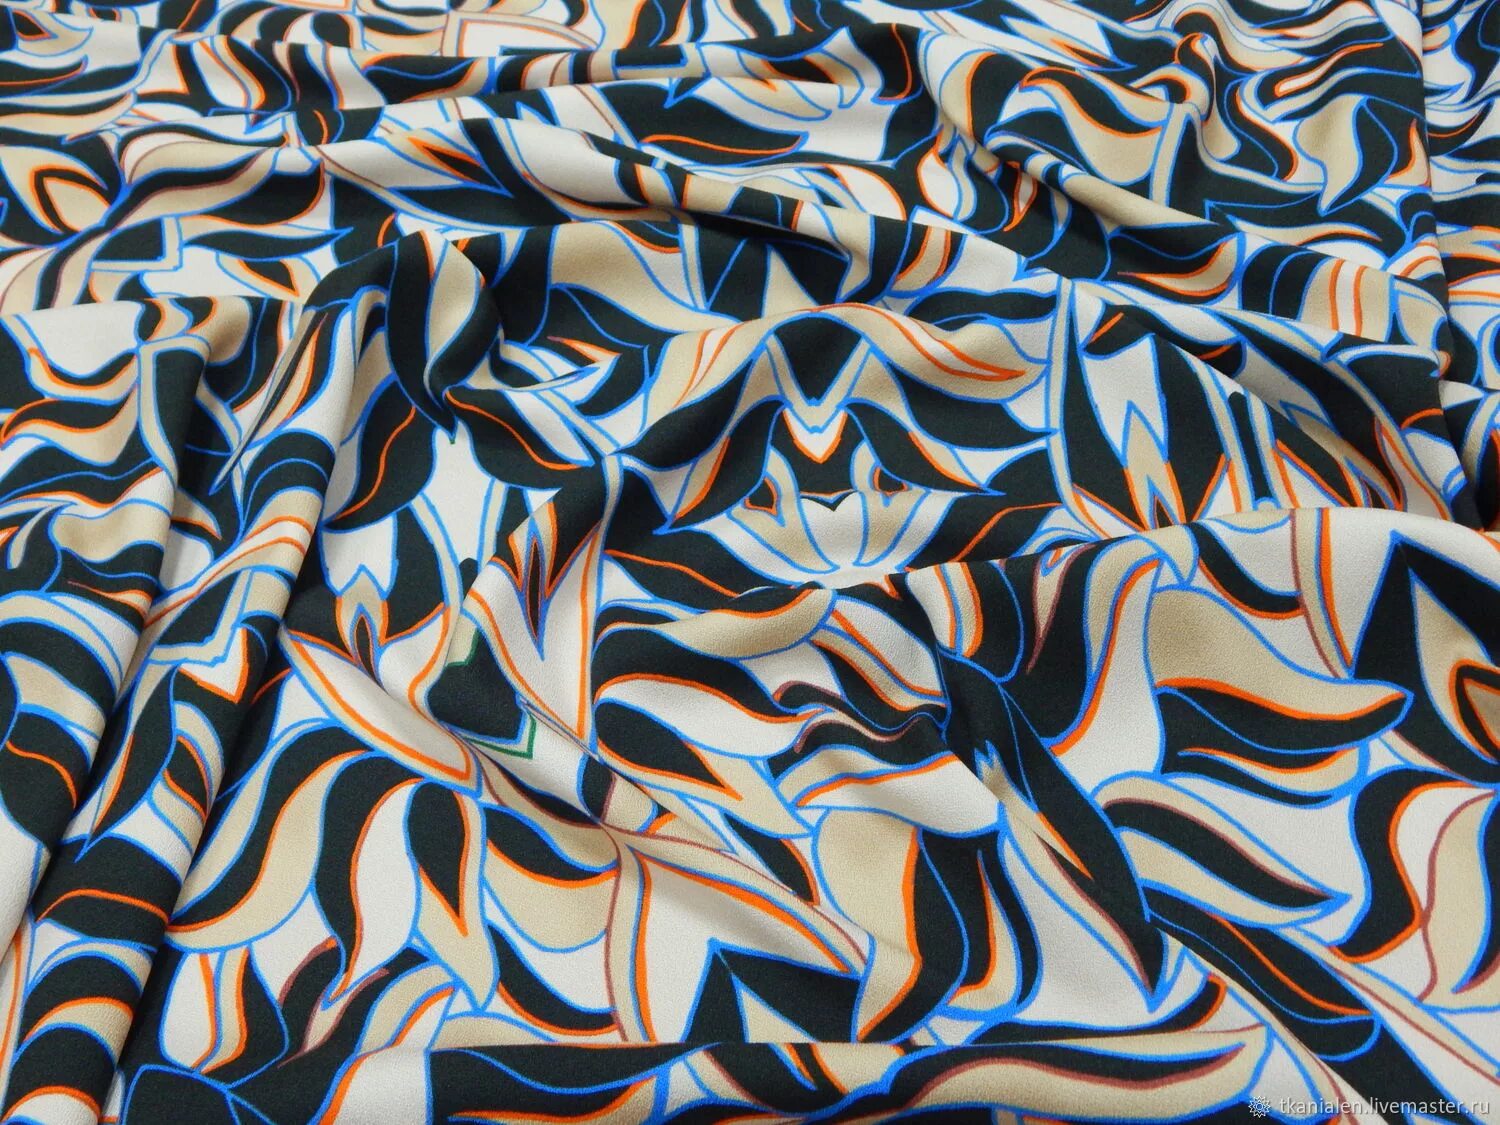 Рисунок вискоза. Ткань just Cavalli. Ткань с абстрактным рисунком. Ткань вискоза. Ткань креп принт.